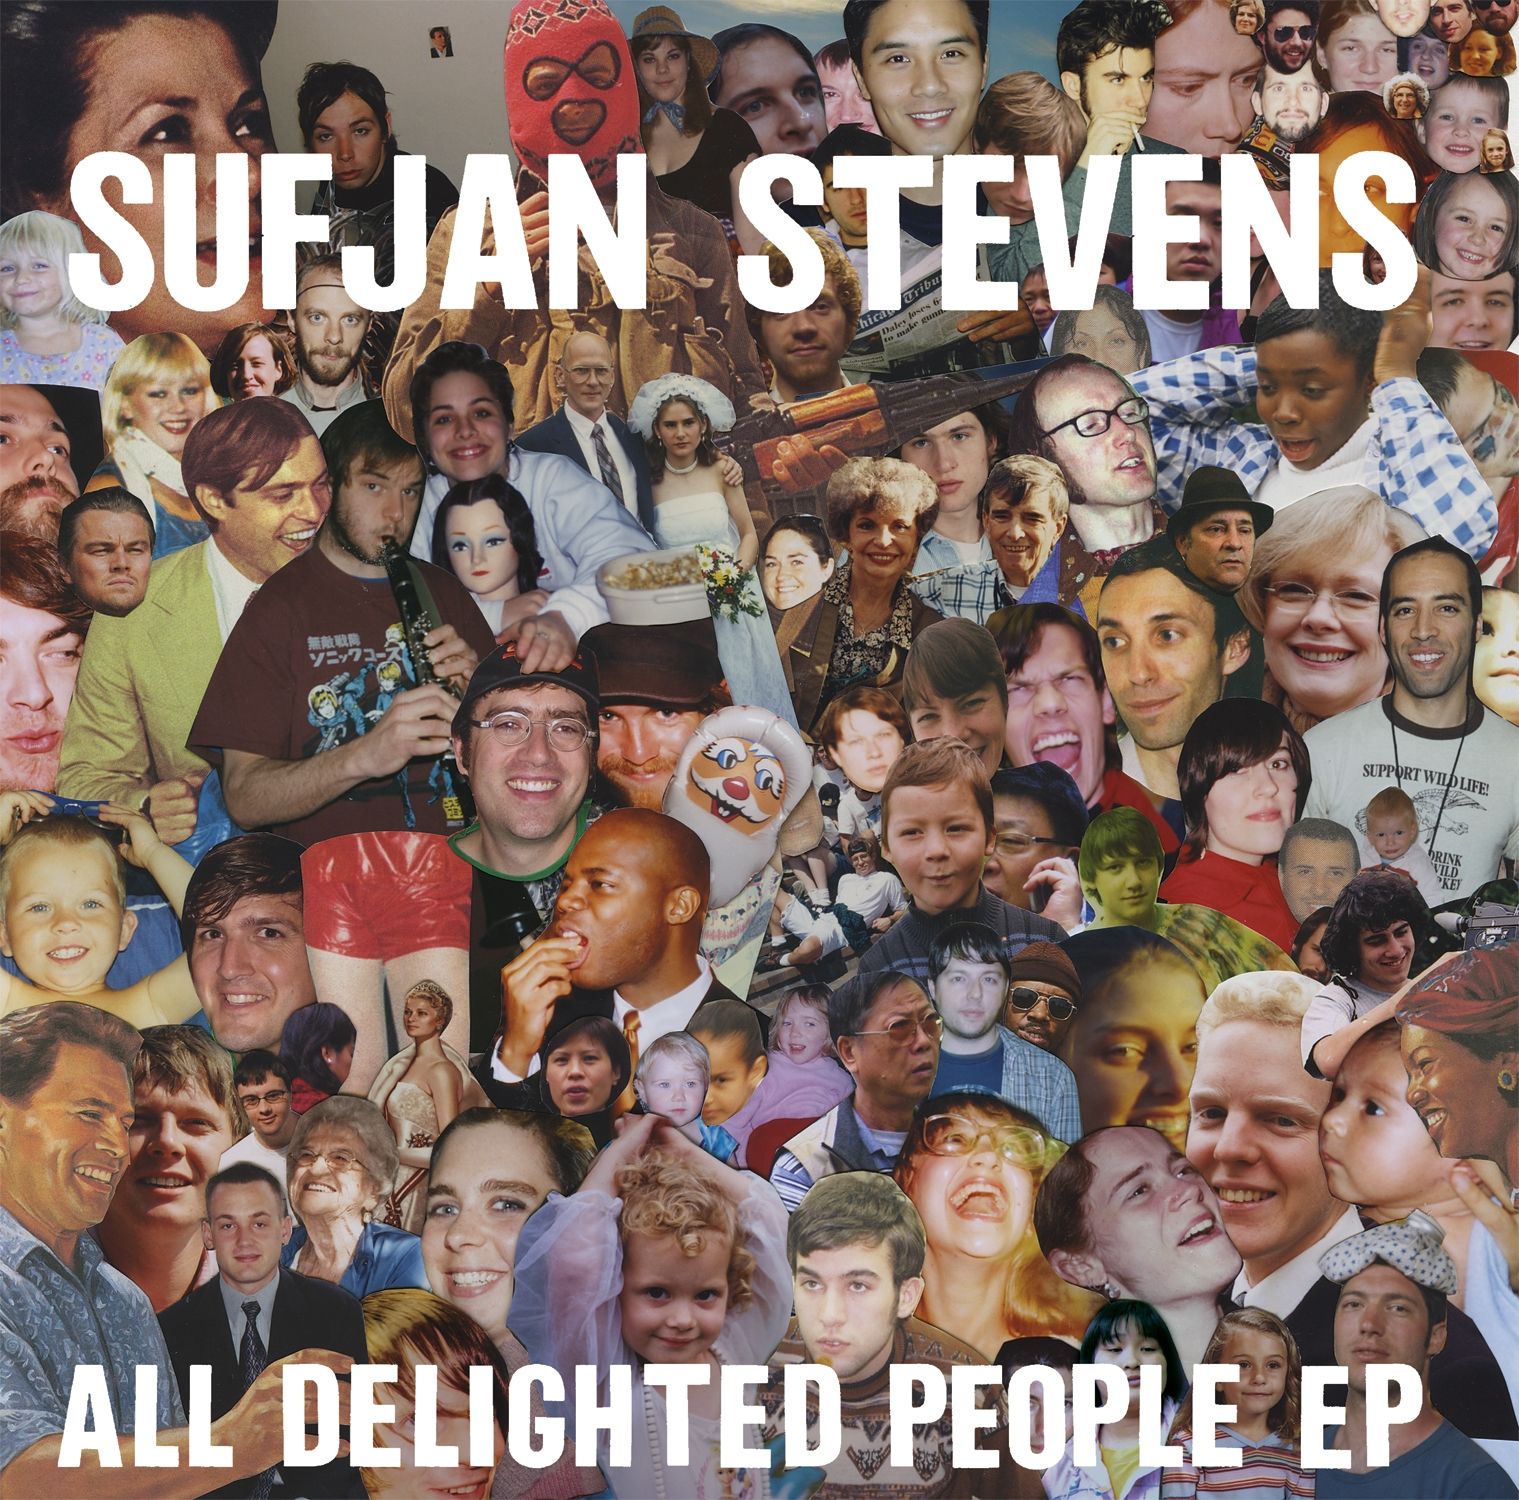 Imagem do álbum All Delighted People EP do(a) artista Sufjan Stevens